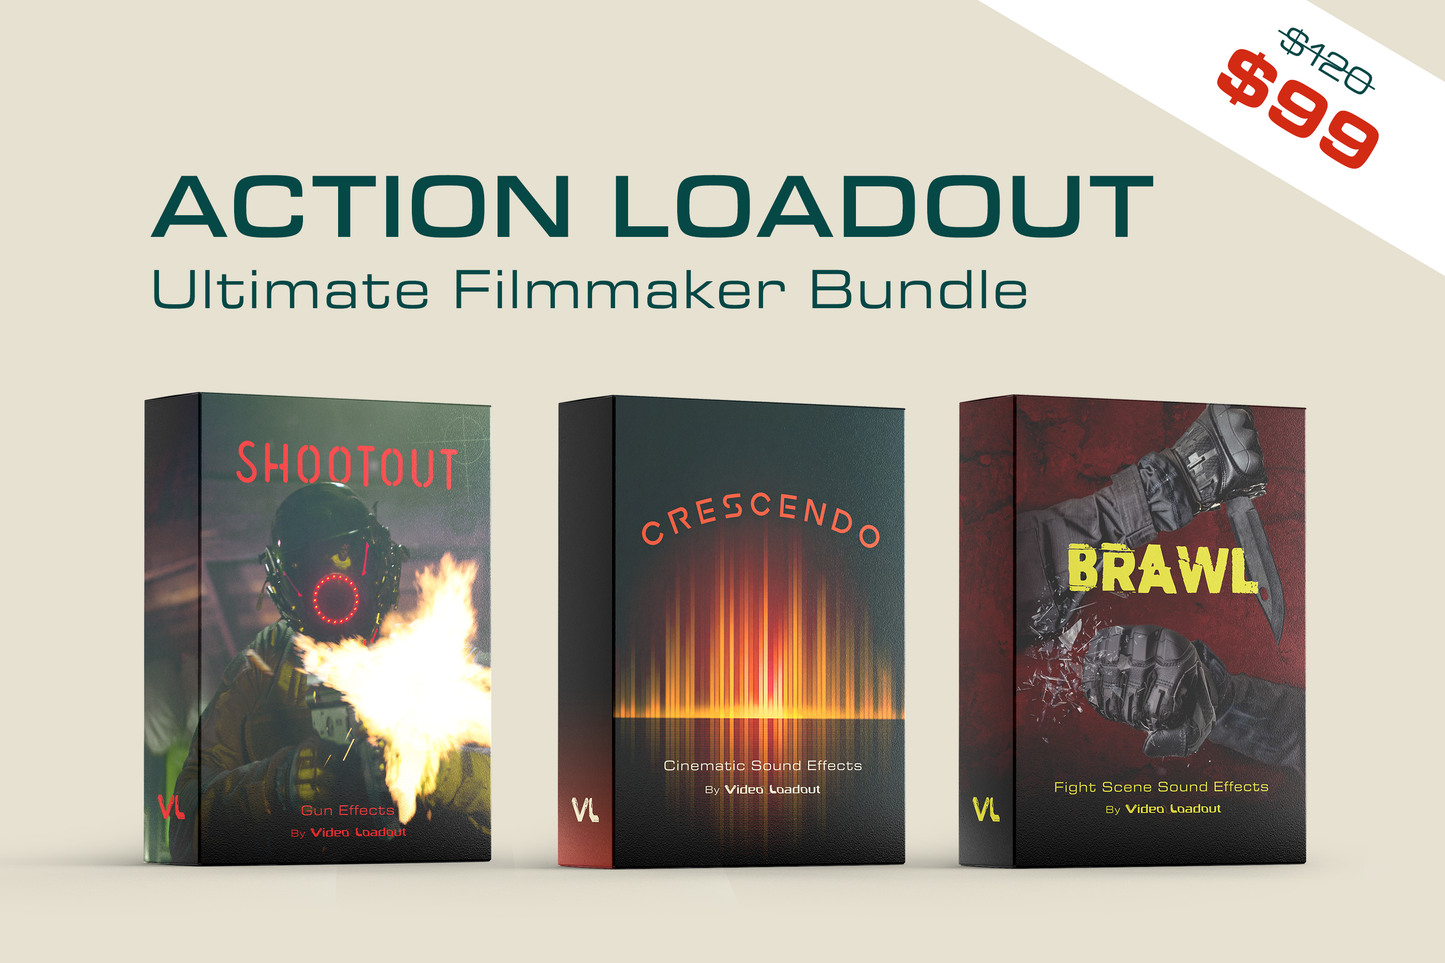 Action Loadout: Ultimate Filmmaker Bundle